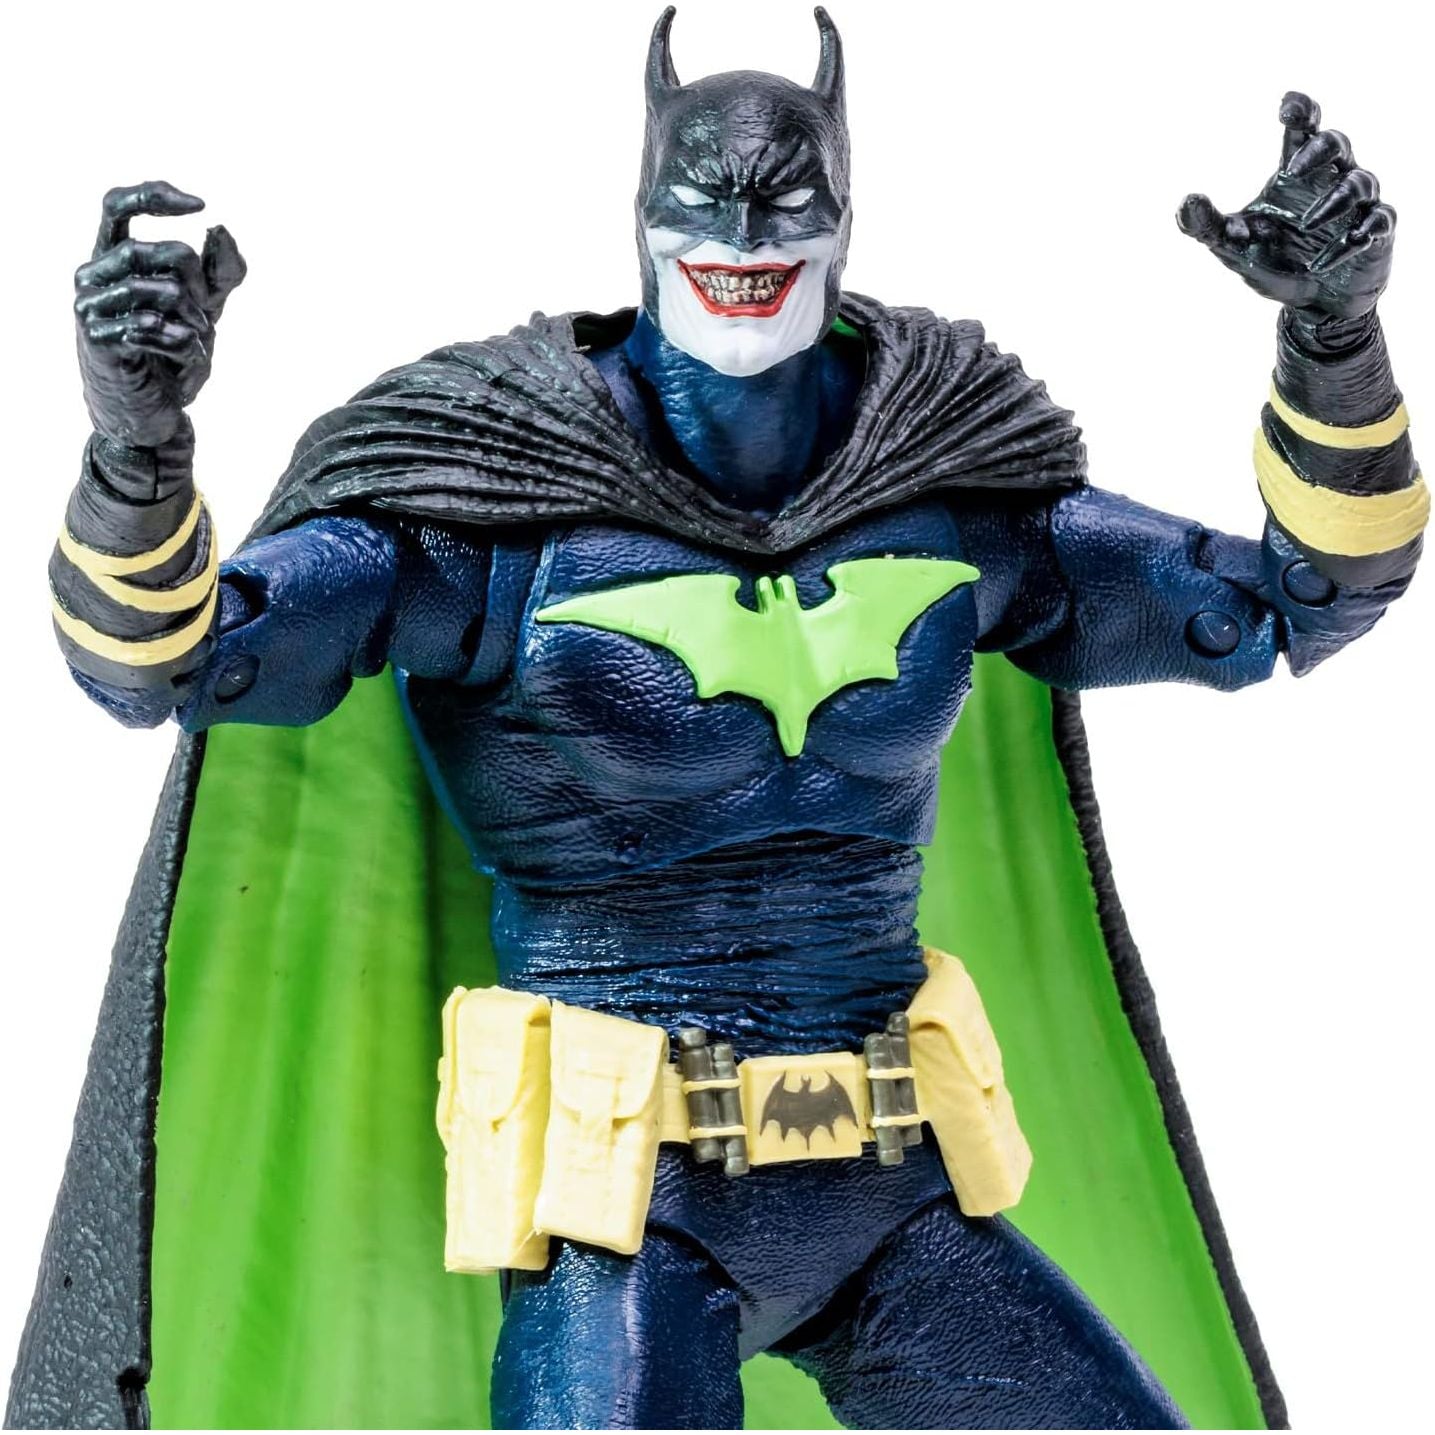 McFarlane Toys DC Multiverse Who Laughs as Batman 7